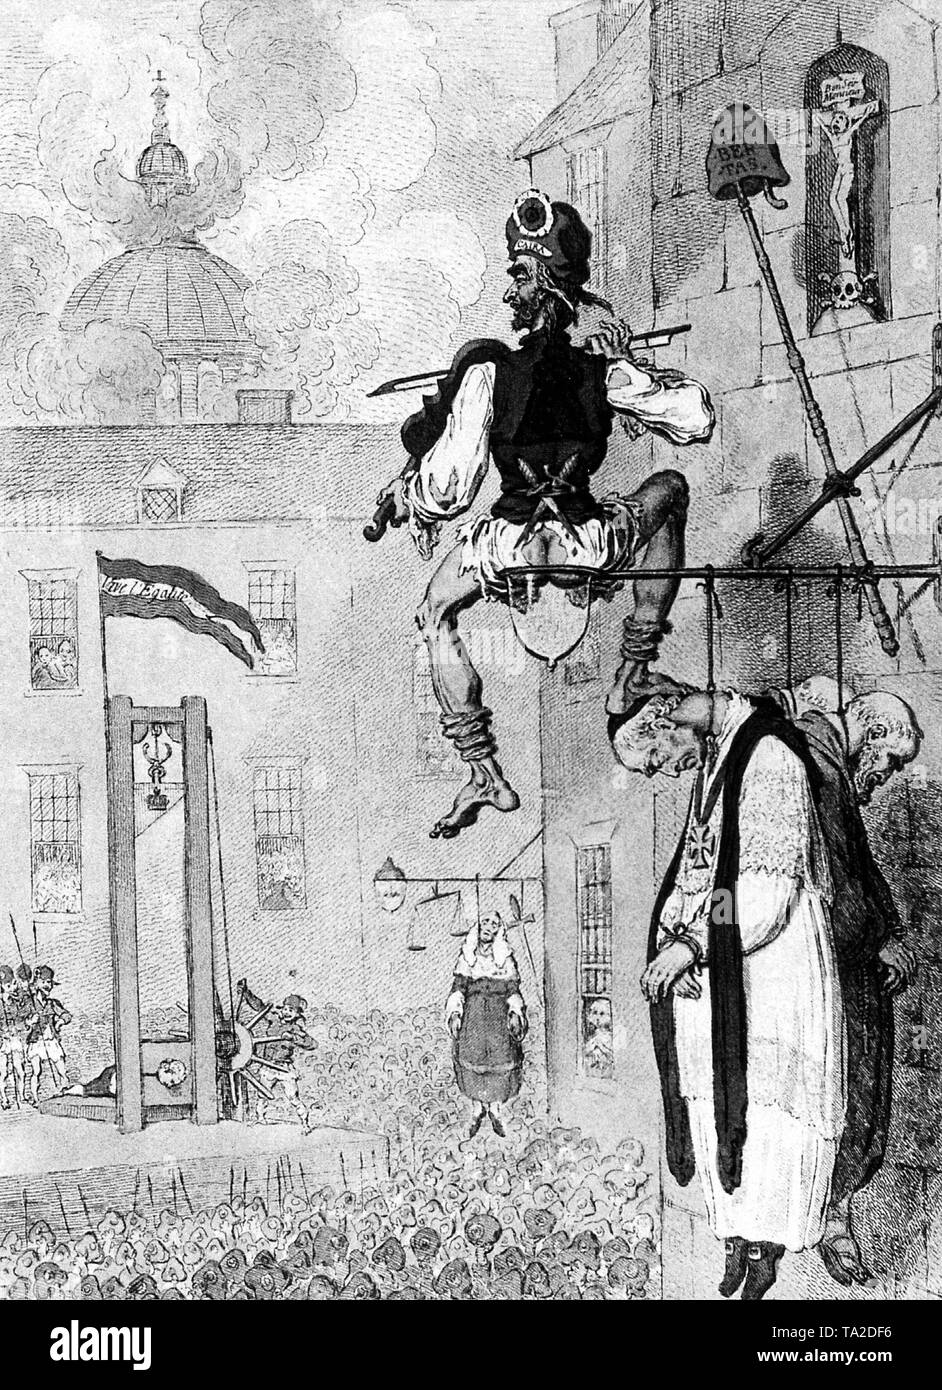 Illustrazione del caricaturista inglese James Gillray sulla rivoluzione francese nel 1793. In primo piano vi è un repubblicano (sans-culotte), che suona il violino all'esecuzione dei sacerdoti. In background, un impiccato giudice tra una spada e bilancia. A sinistra, la scena di una esecuzione dalla ghigliottina. Foto Stock